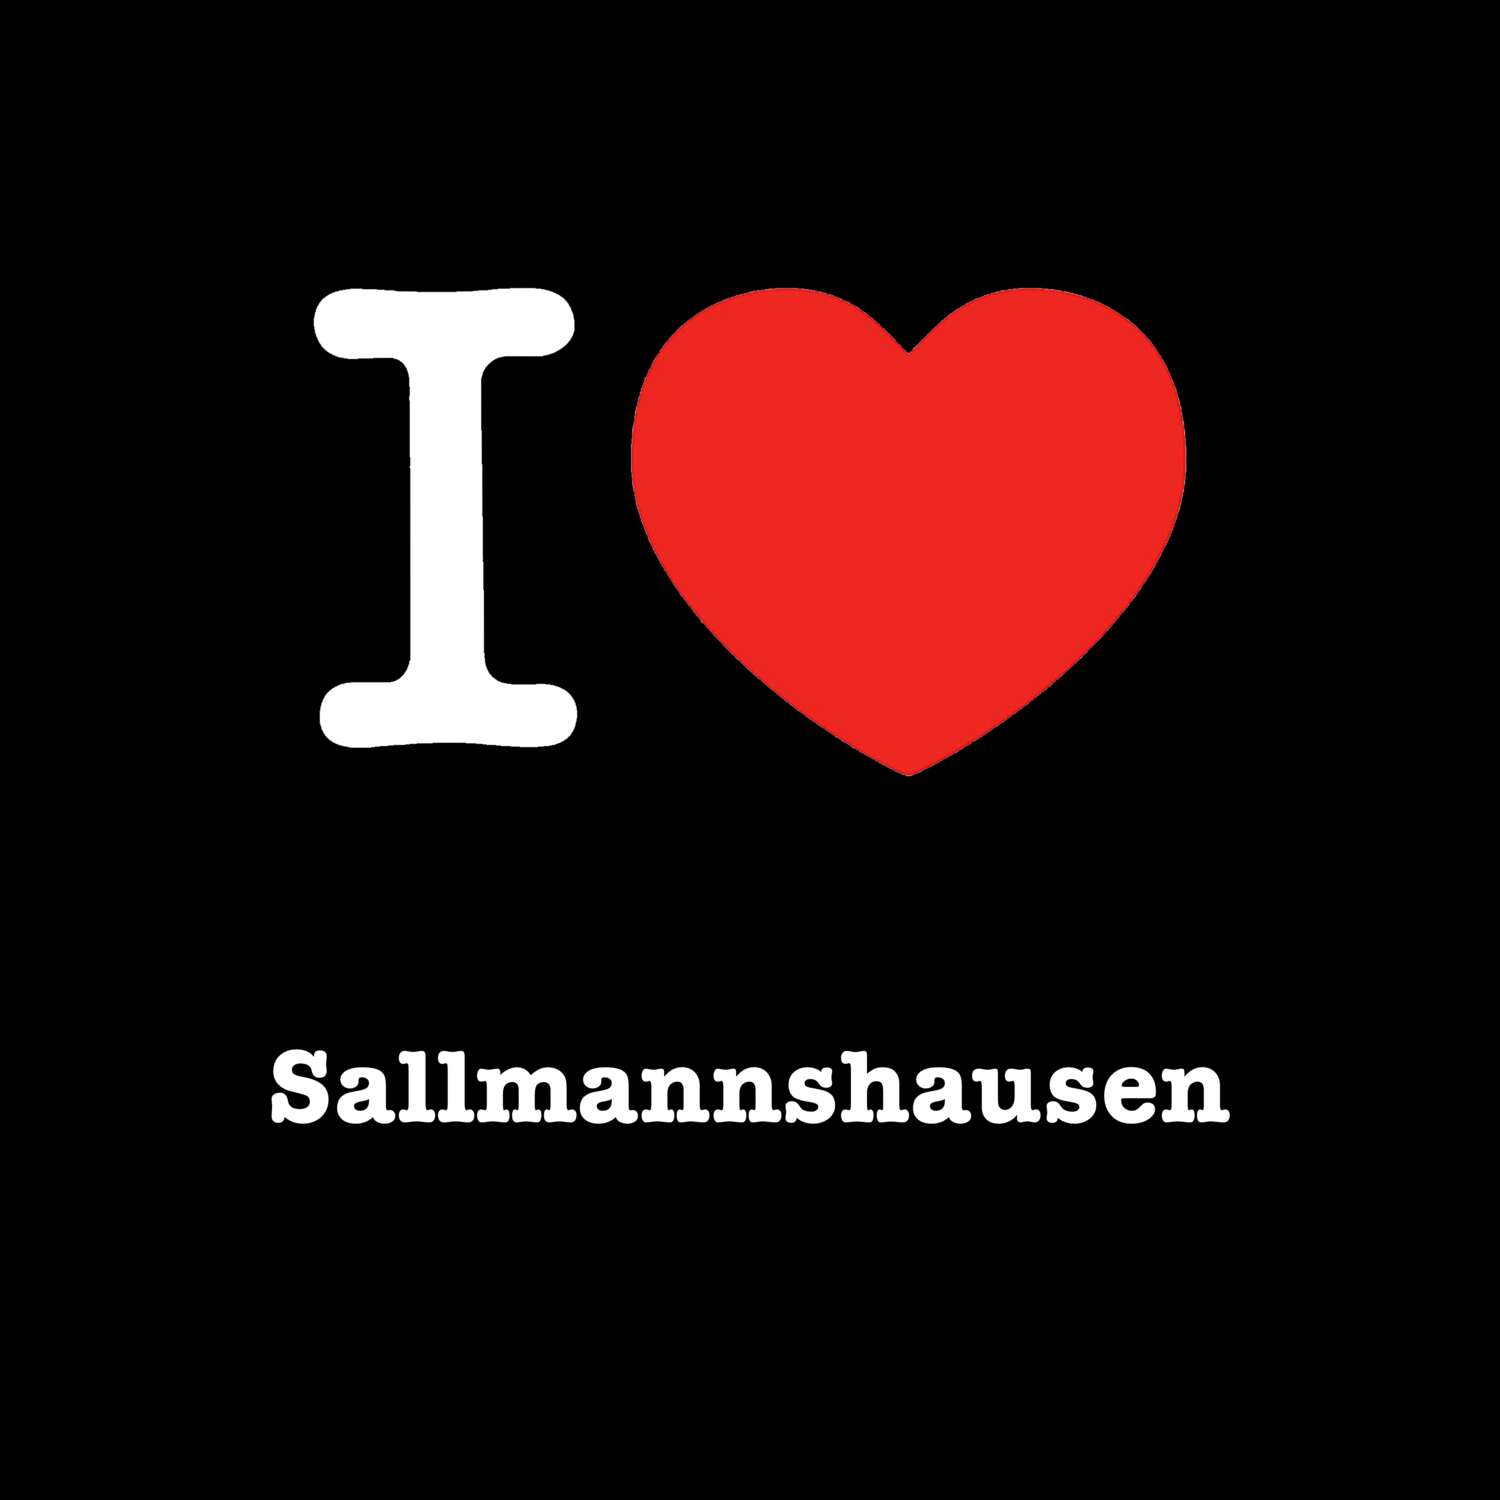 Sallmannshausen T-Shirt »I love«